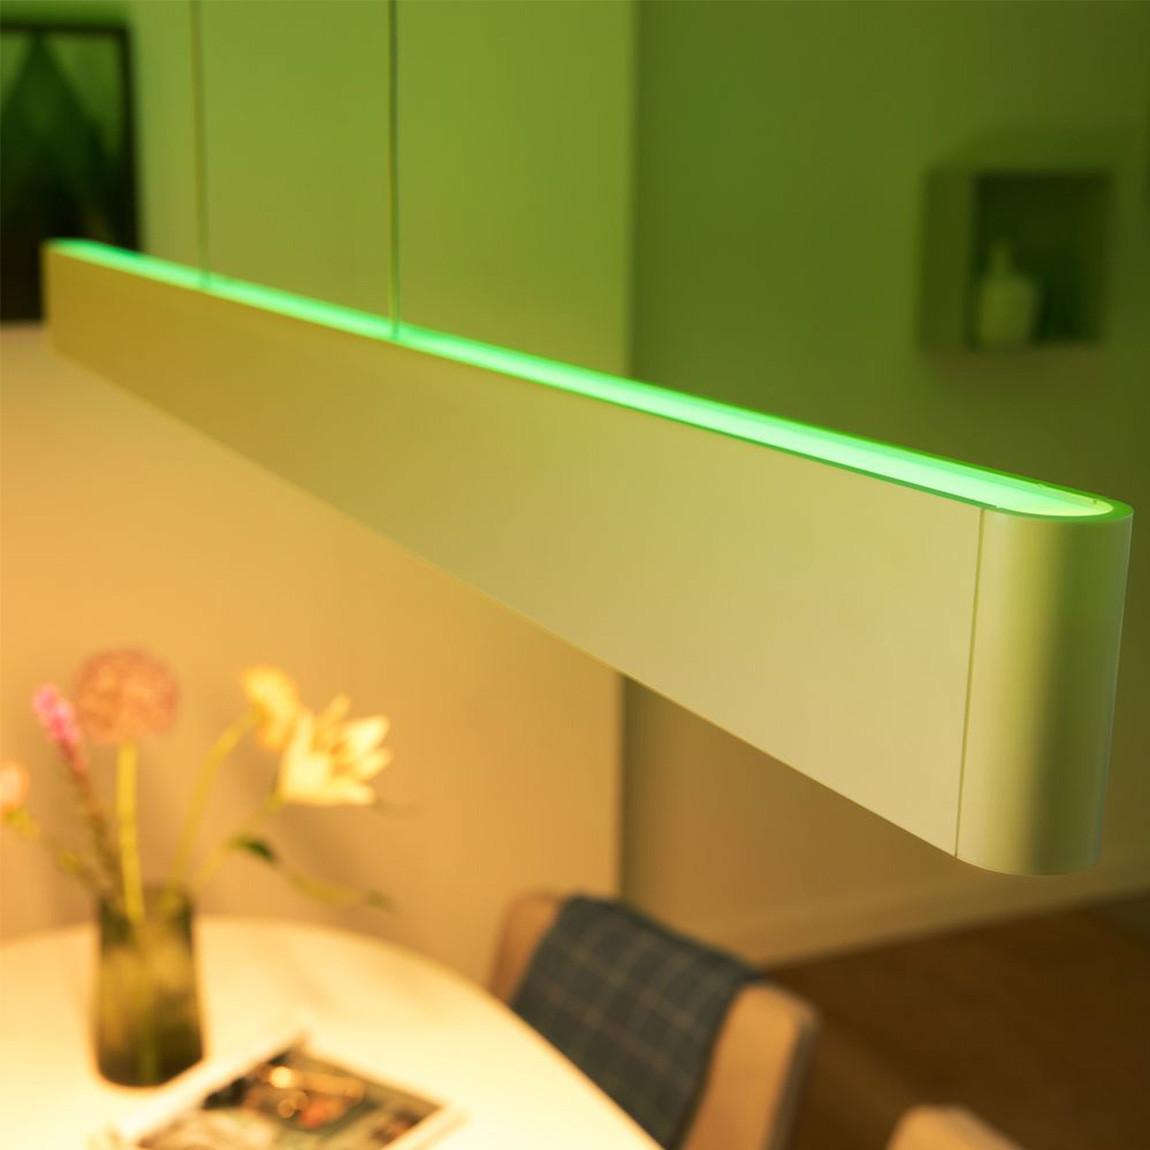 Philips Hue White & Color Ambiance Ensis Bluetooth + Bridge_Lifestyle_Ensis grünes Licht